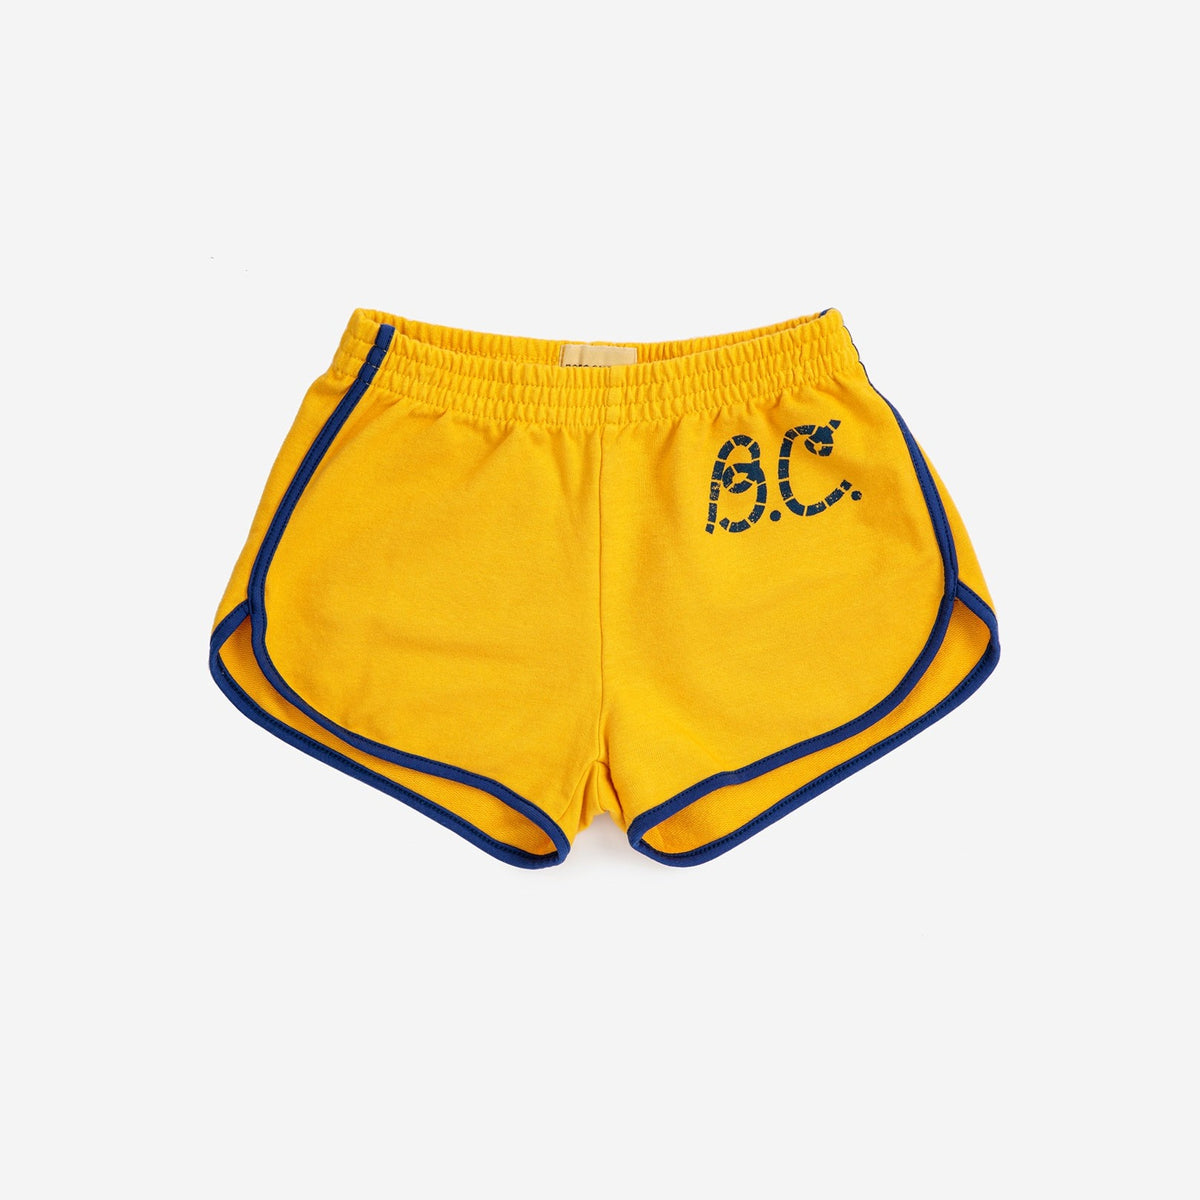 B.C. Sail Rope Shorts